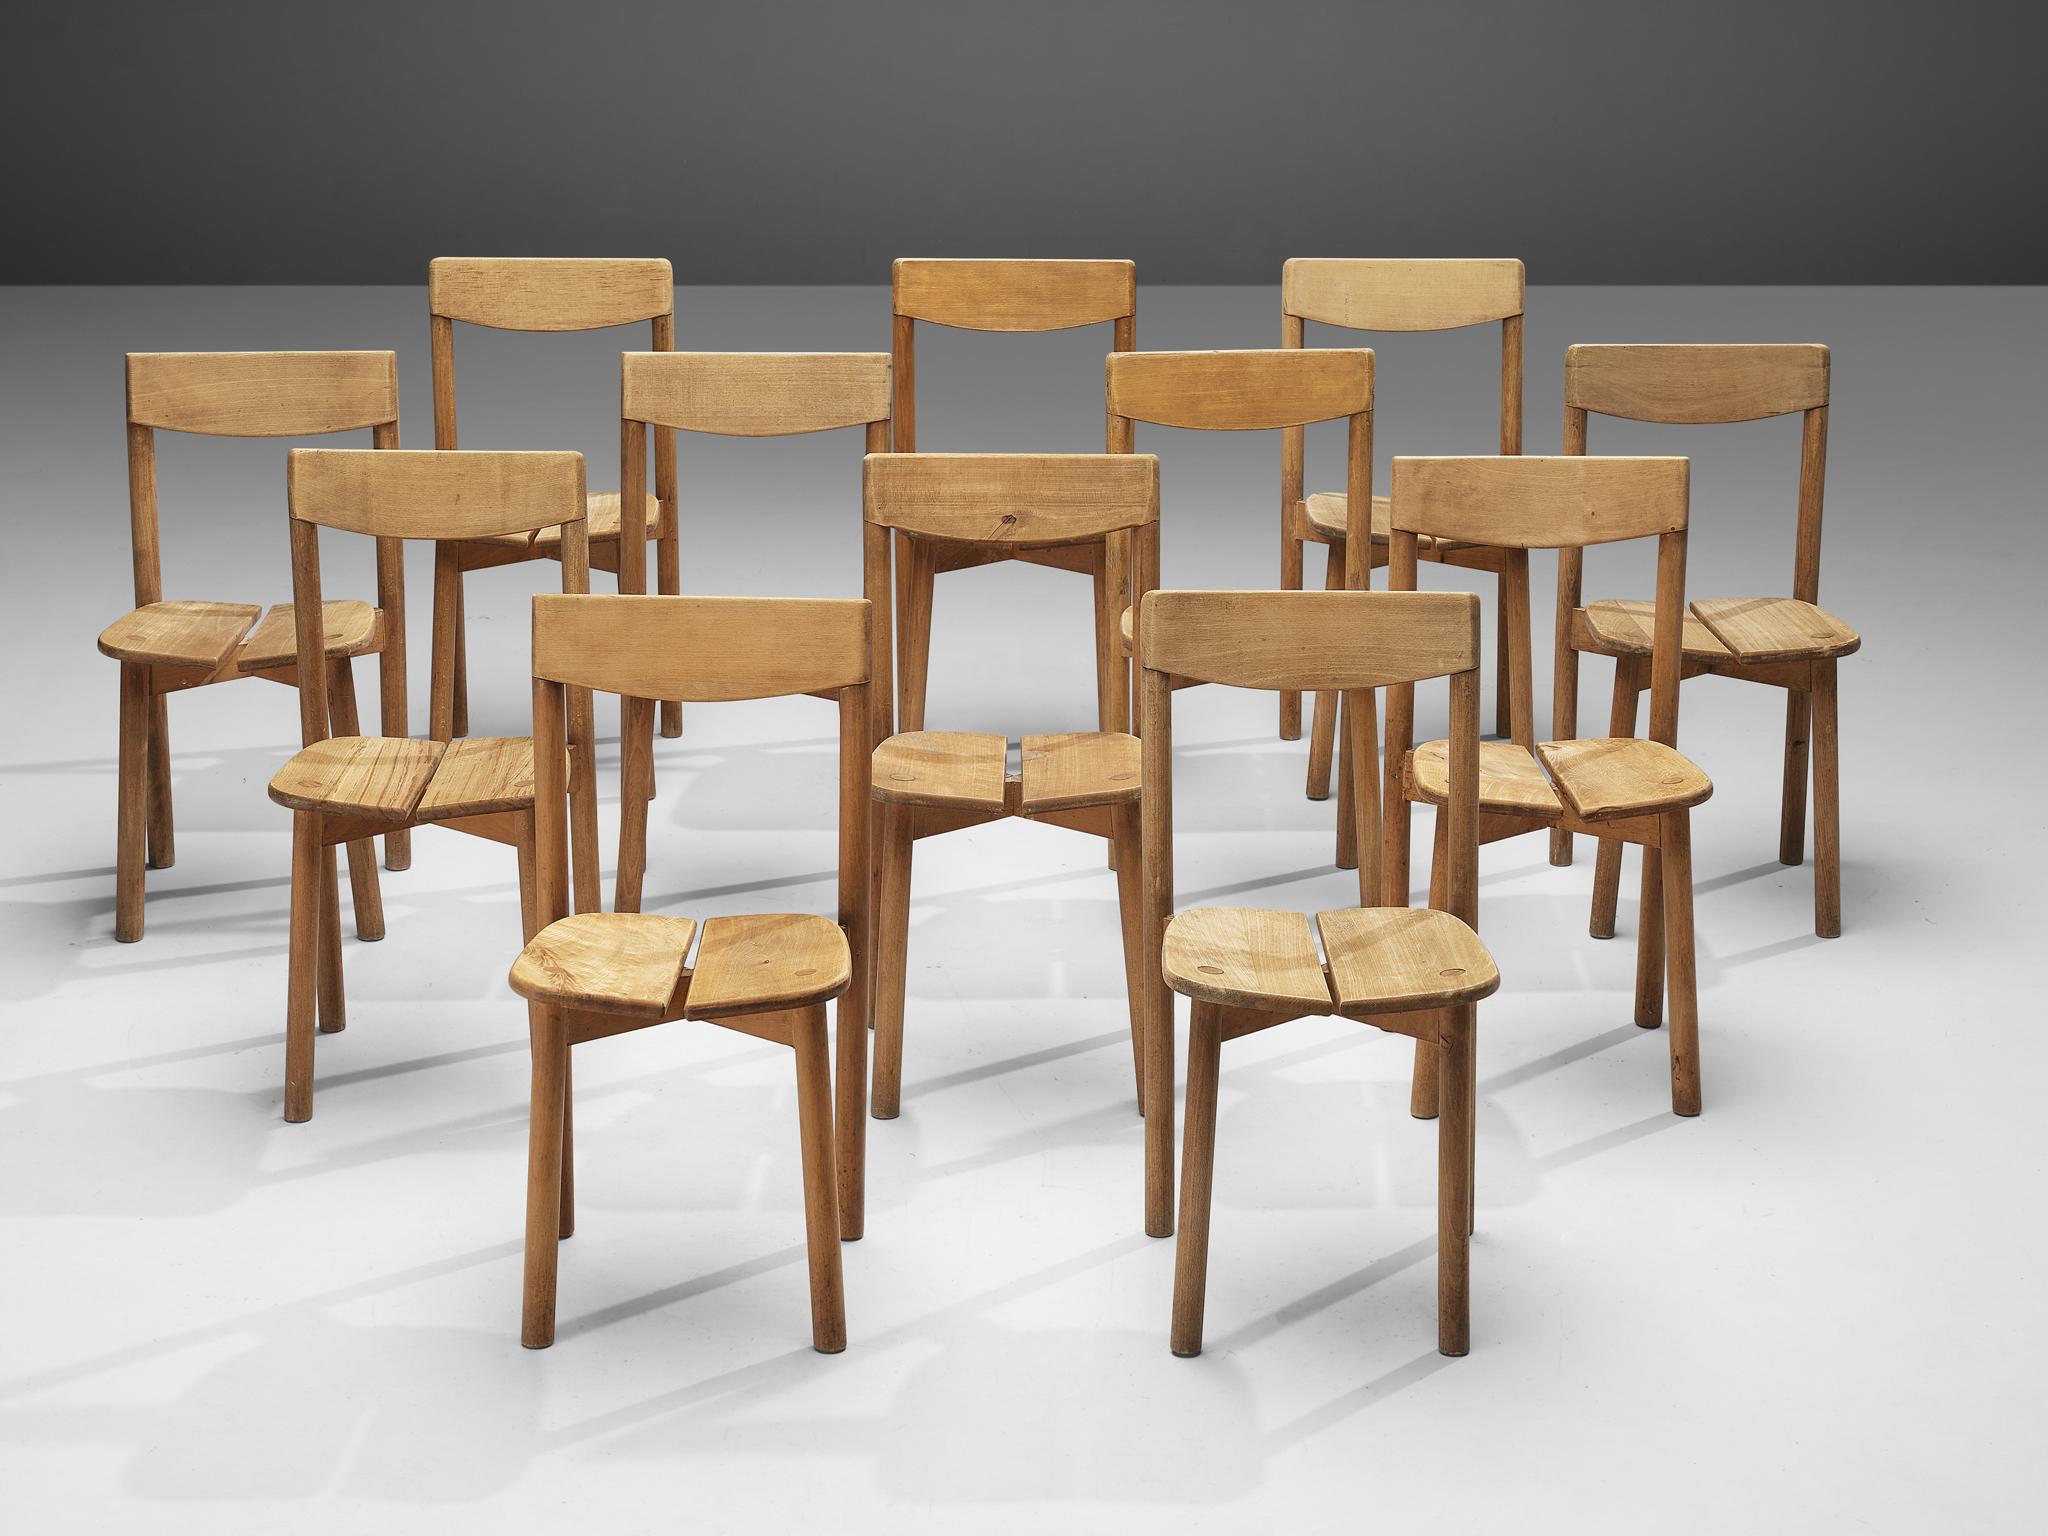 Pierre Gautier-Delaye, ensemble de douze chaises de salle à manger, hêtre, France, années 1960

Cet ensemble de chaises de salle à manger subtiles et modestes est exécuté en bois de hêtre teinté. Le siège est divisé en deux lattes de forme organique